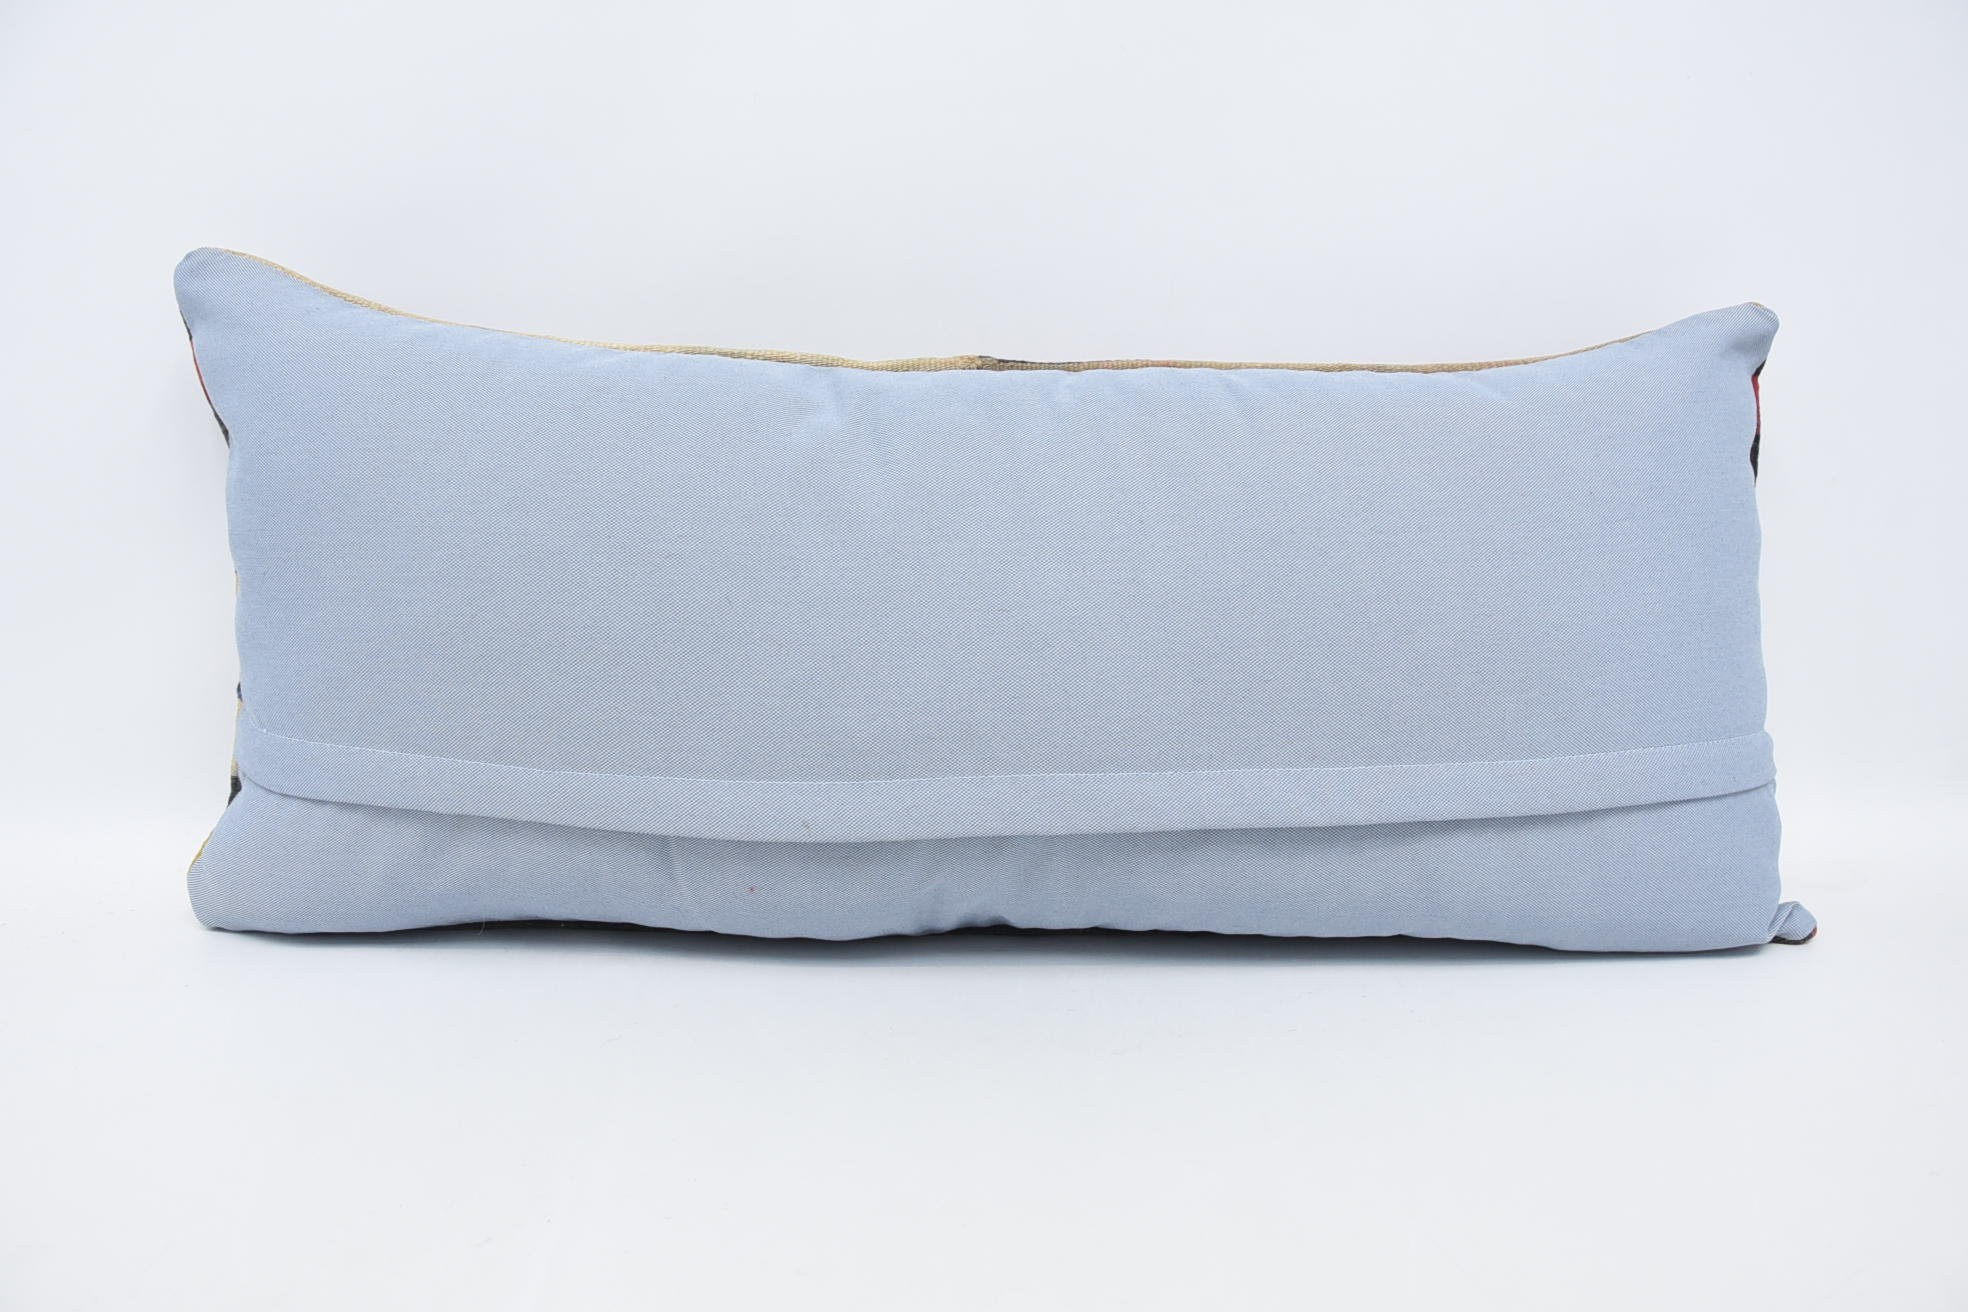 Kilim Cushion Sham, 16"x36" Beige Pillow, Kilim Pillow Cover, Gift Pillow, Outdoor Bolster Cushion, Handmade Rug Seat Cushion Cover